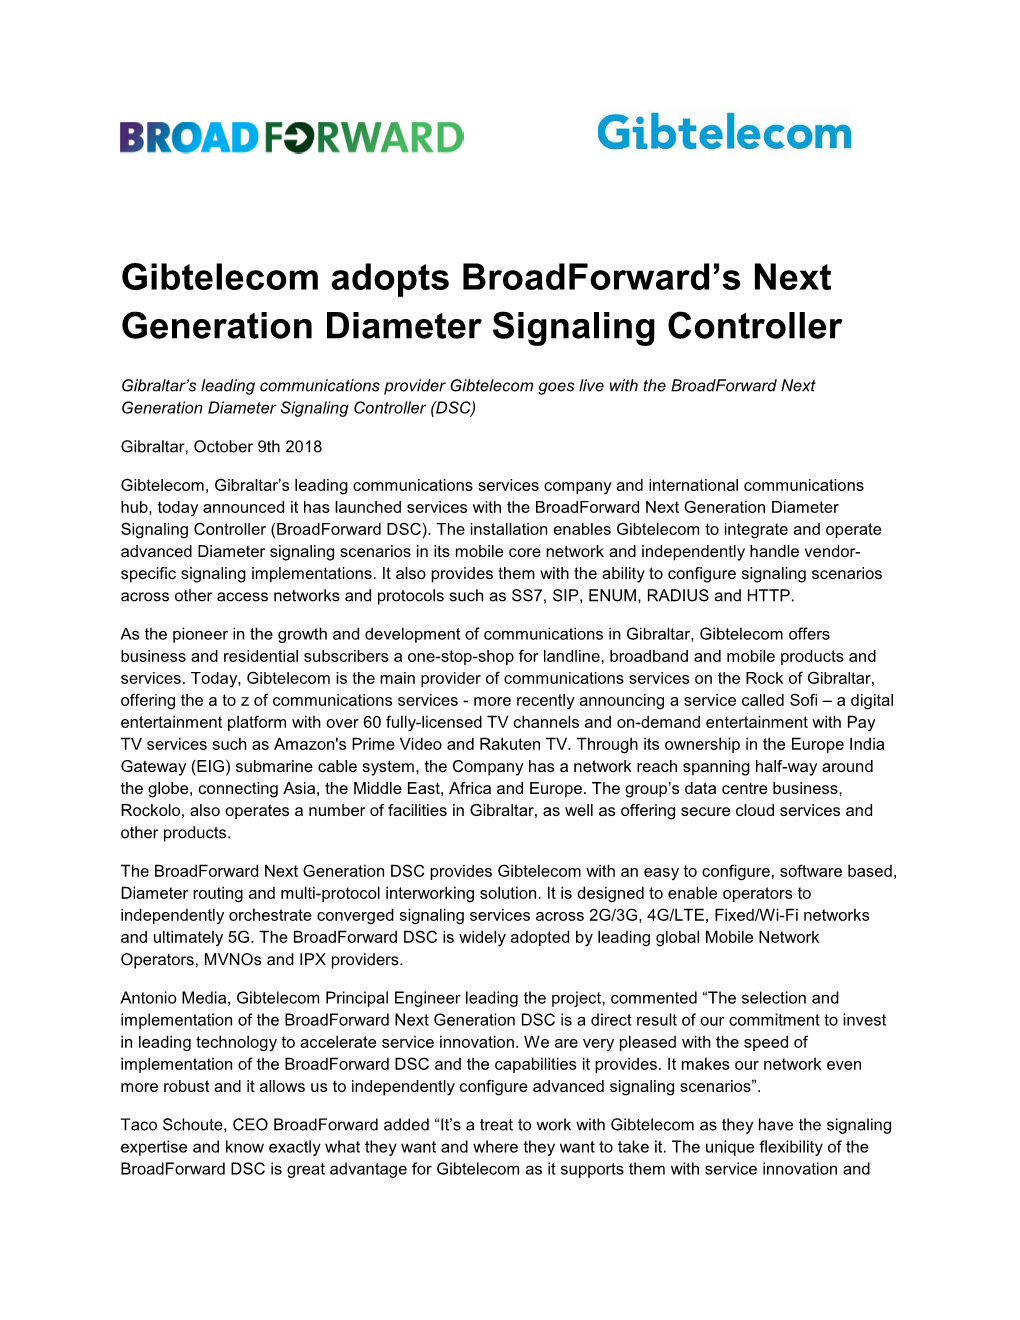 Gibtelecom Adopts Broadforward's Next Generation Diameter